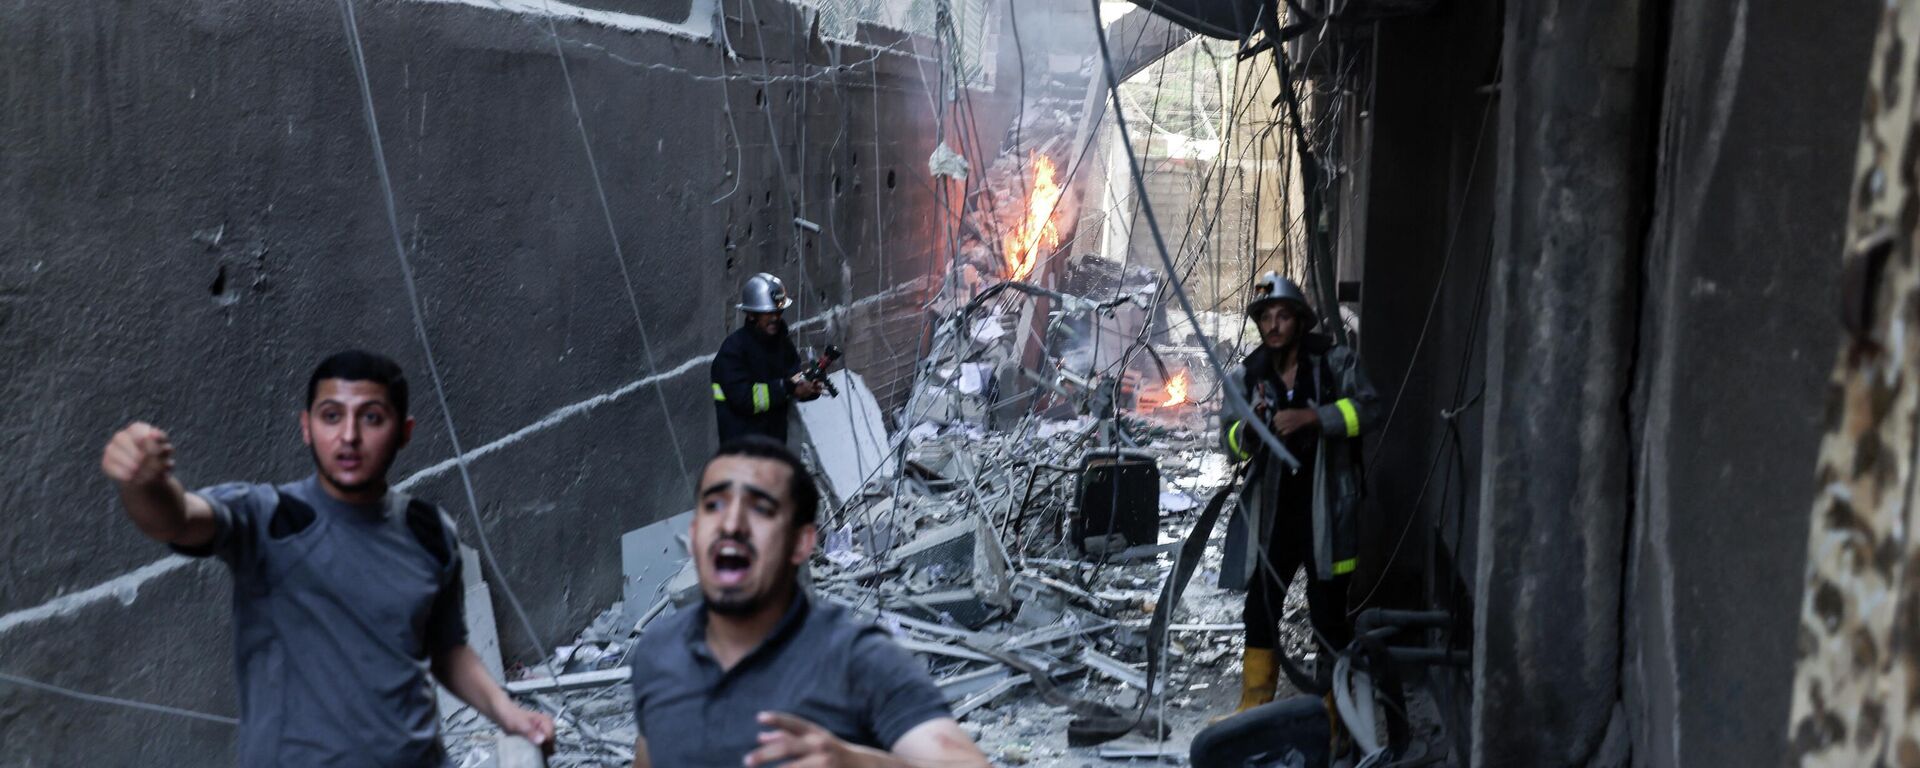 Equipes de resgate e bombeiros apagam incêndio em meio a destruição após ataque aéreo israelense em Gaza, em 5 de agosto de 2022 - Sputnik Brasil, 1920, 05.08.2022